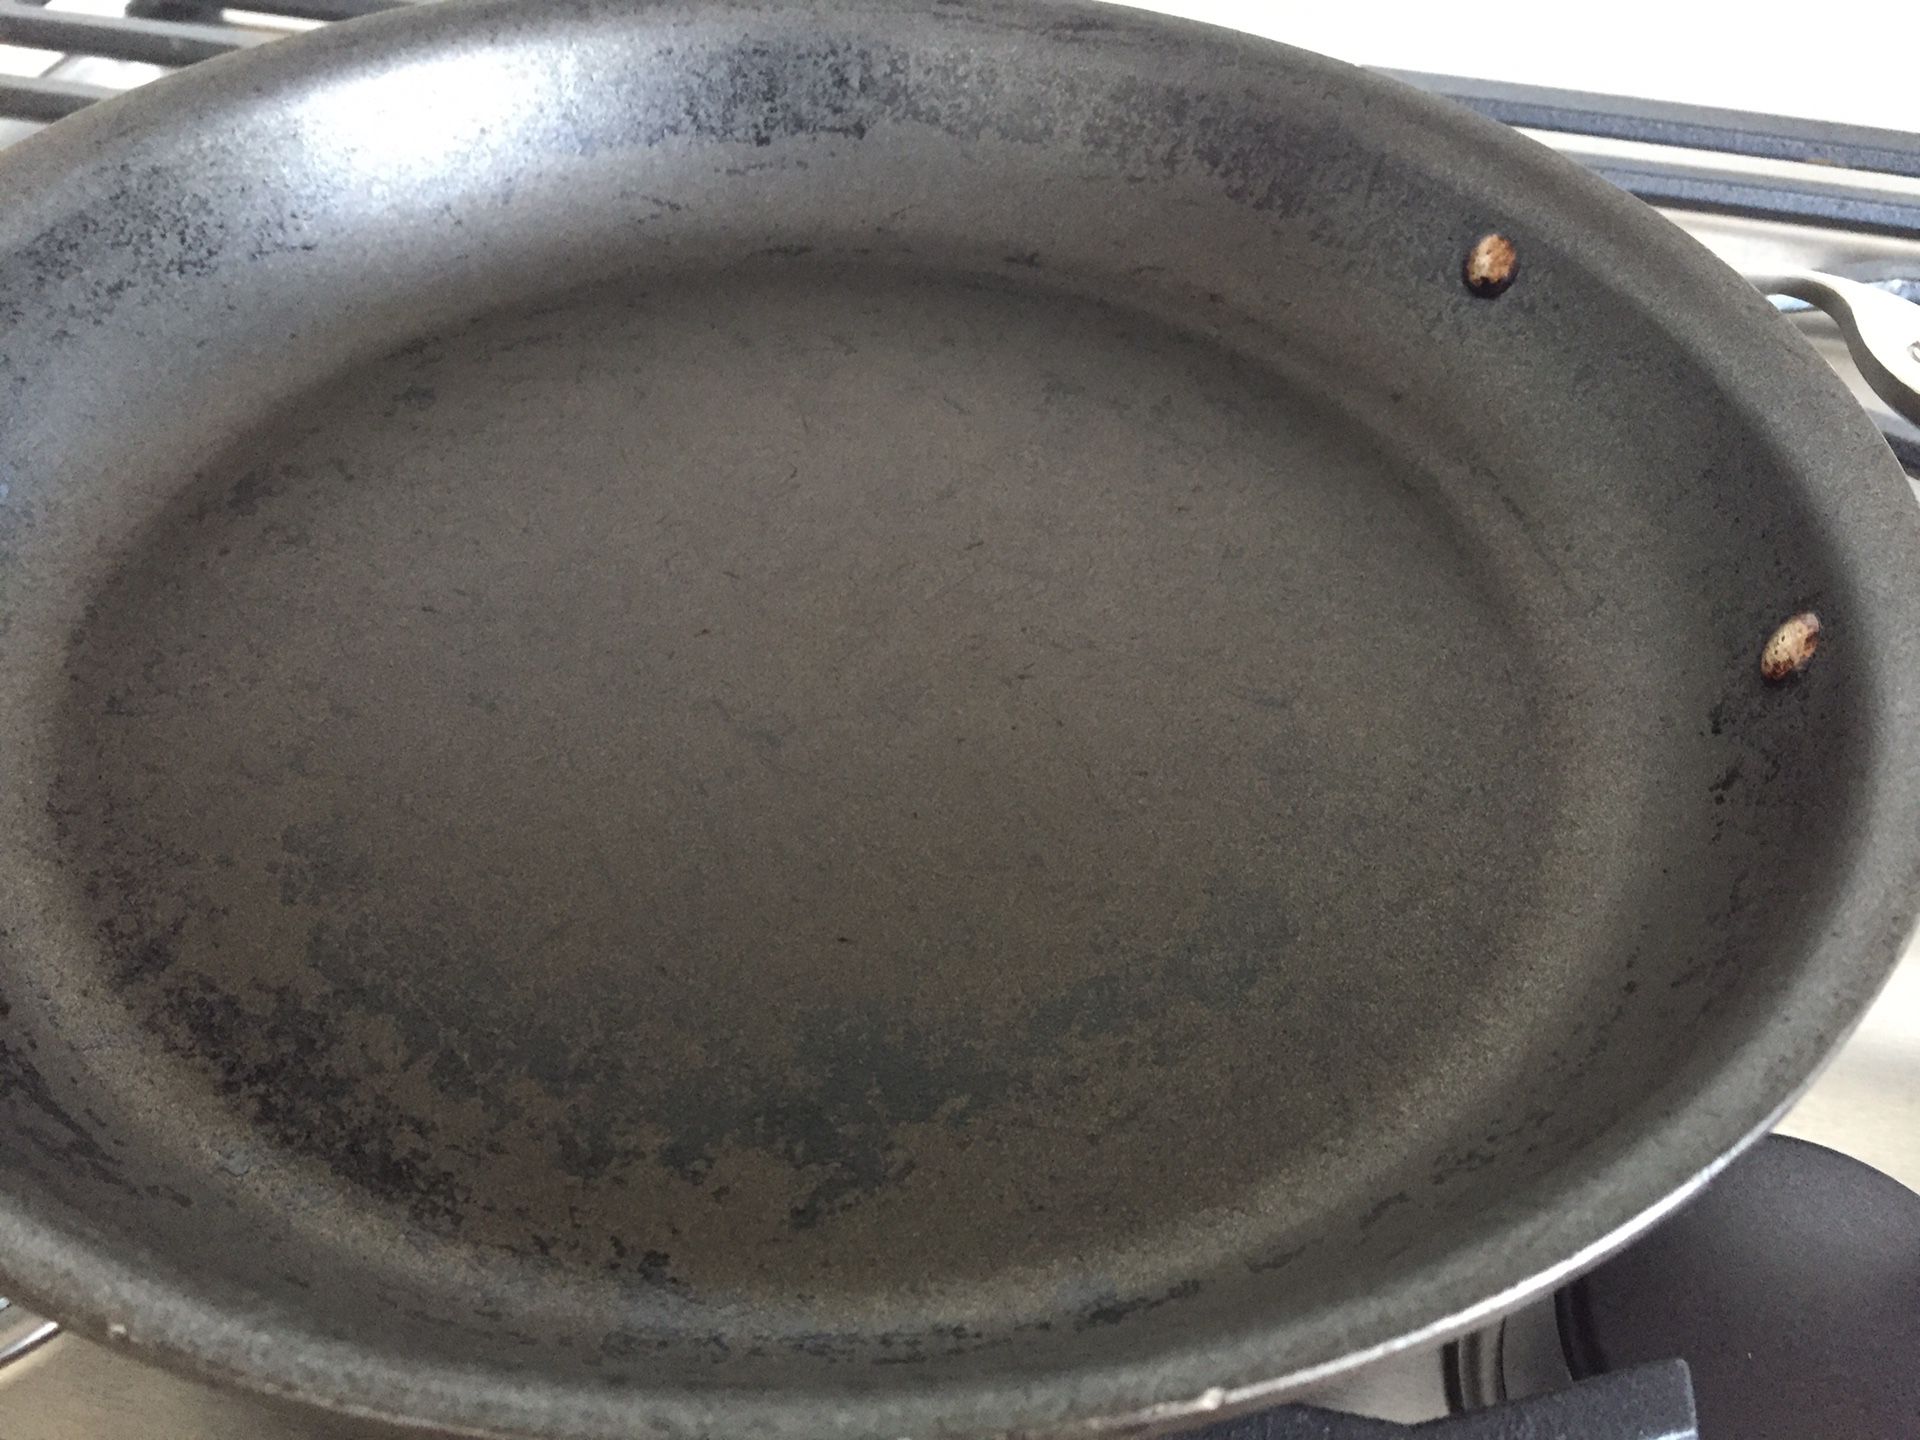 Calphalon 12” frying pan